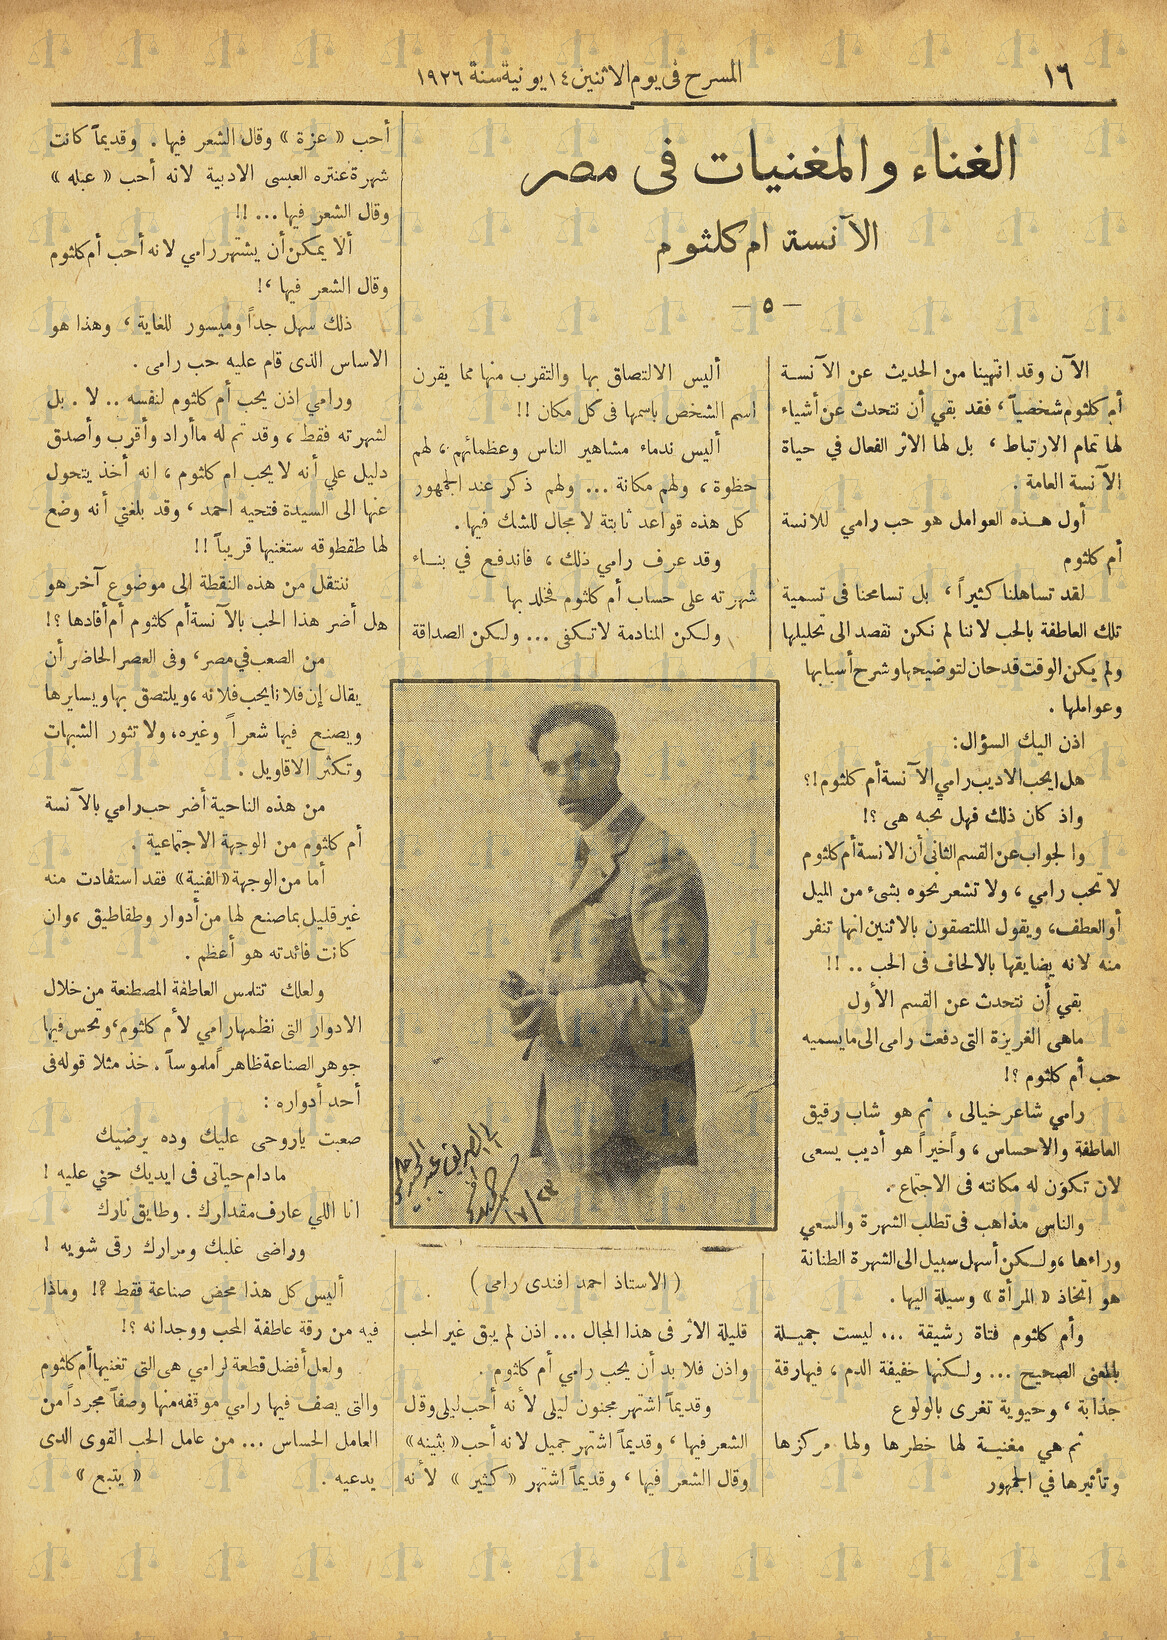 من كلام مجلة المسرح عن قصة حب أحمد رامي لأم كلثوم، مجلة المسرح، يوم 14 - 6 - 1926م، ص16